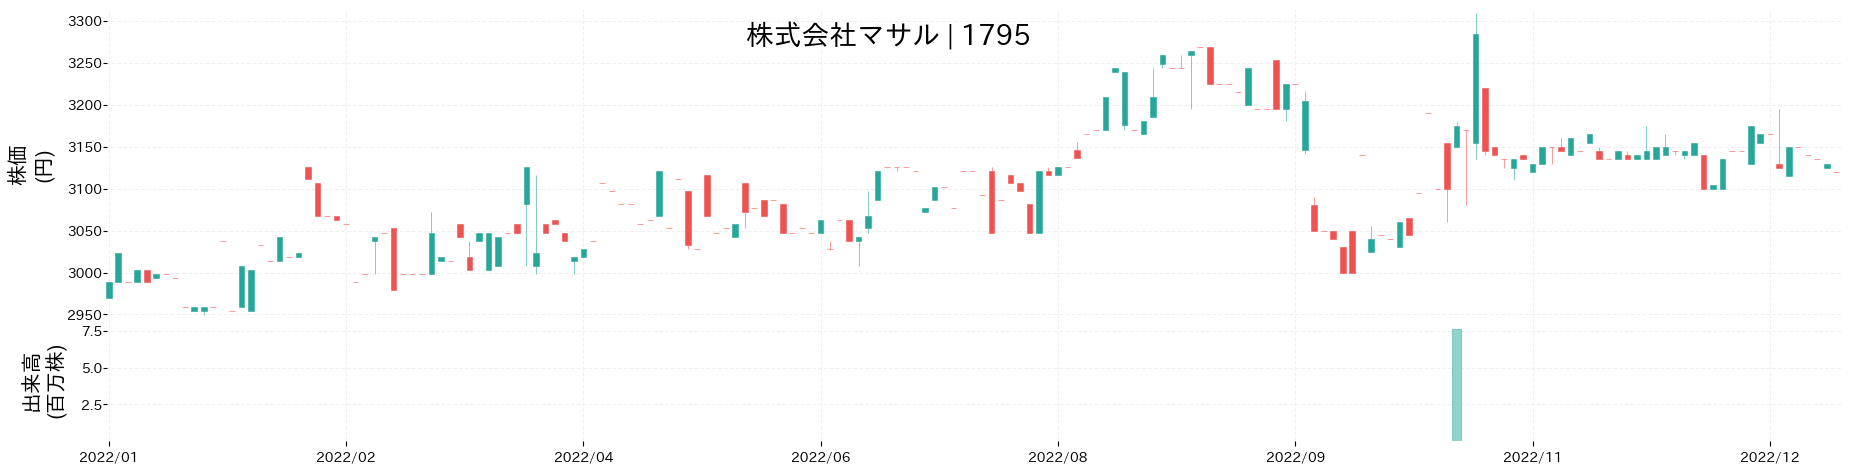 マサルの株価推移(2022)